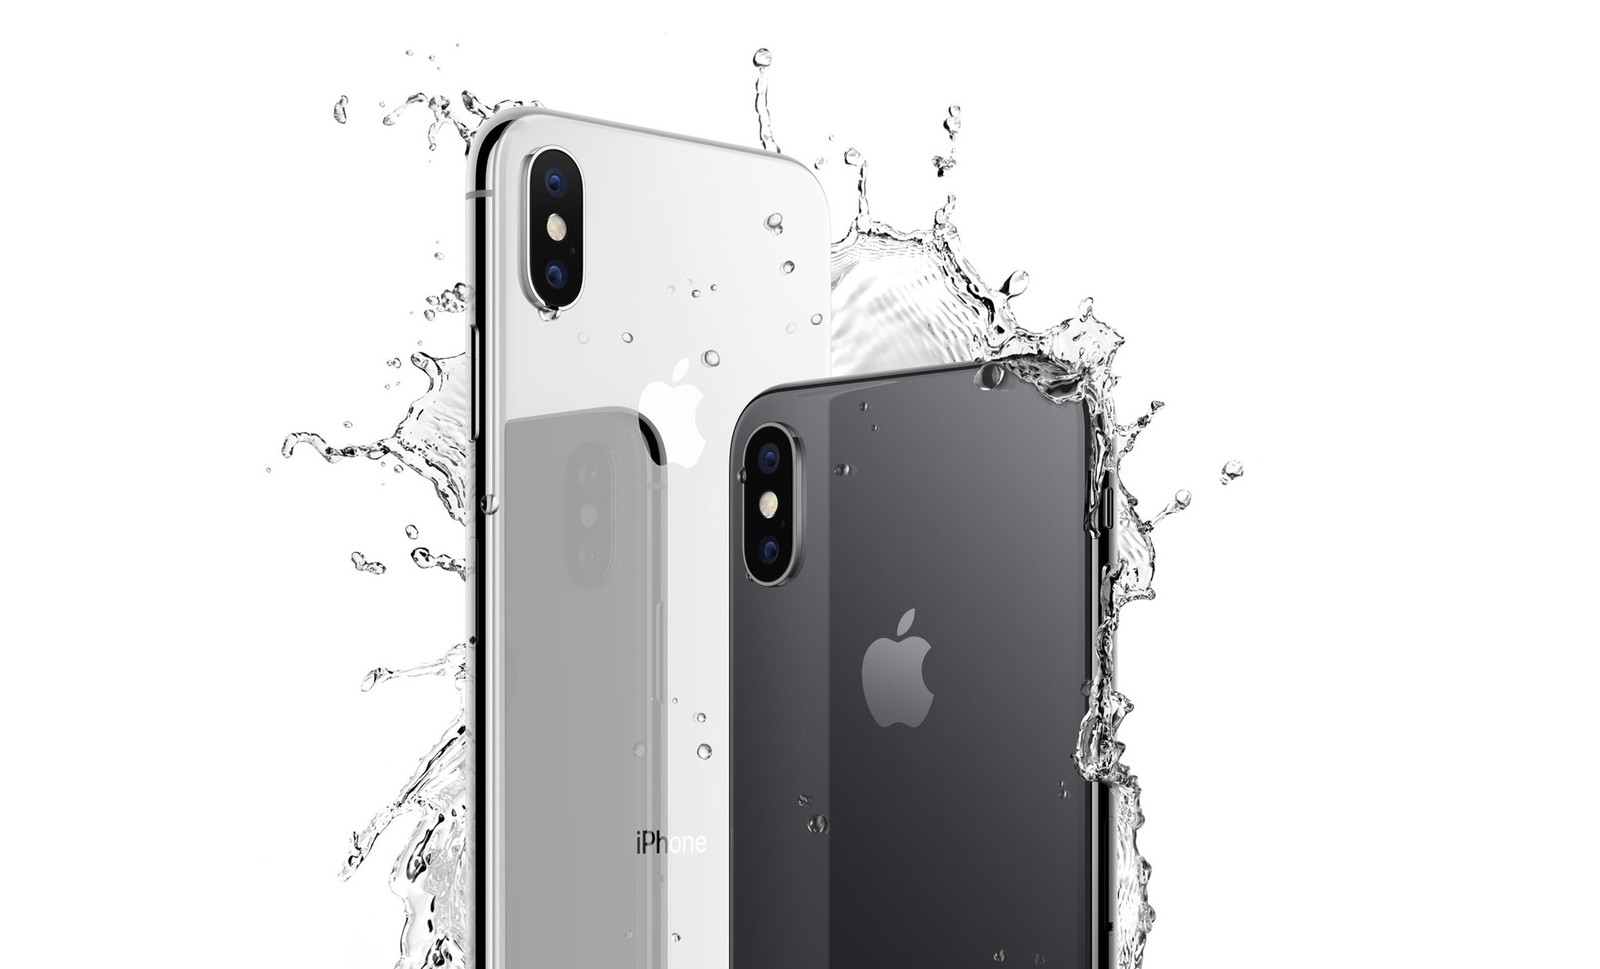 เล่นน้ำเสร็จแล้วอย่าลืมทำ! วิธีไล่น้ำออกจาก iPhone ง่ายๆ ด้วยแอปฟรีเพียงแอปเดียว!